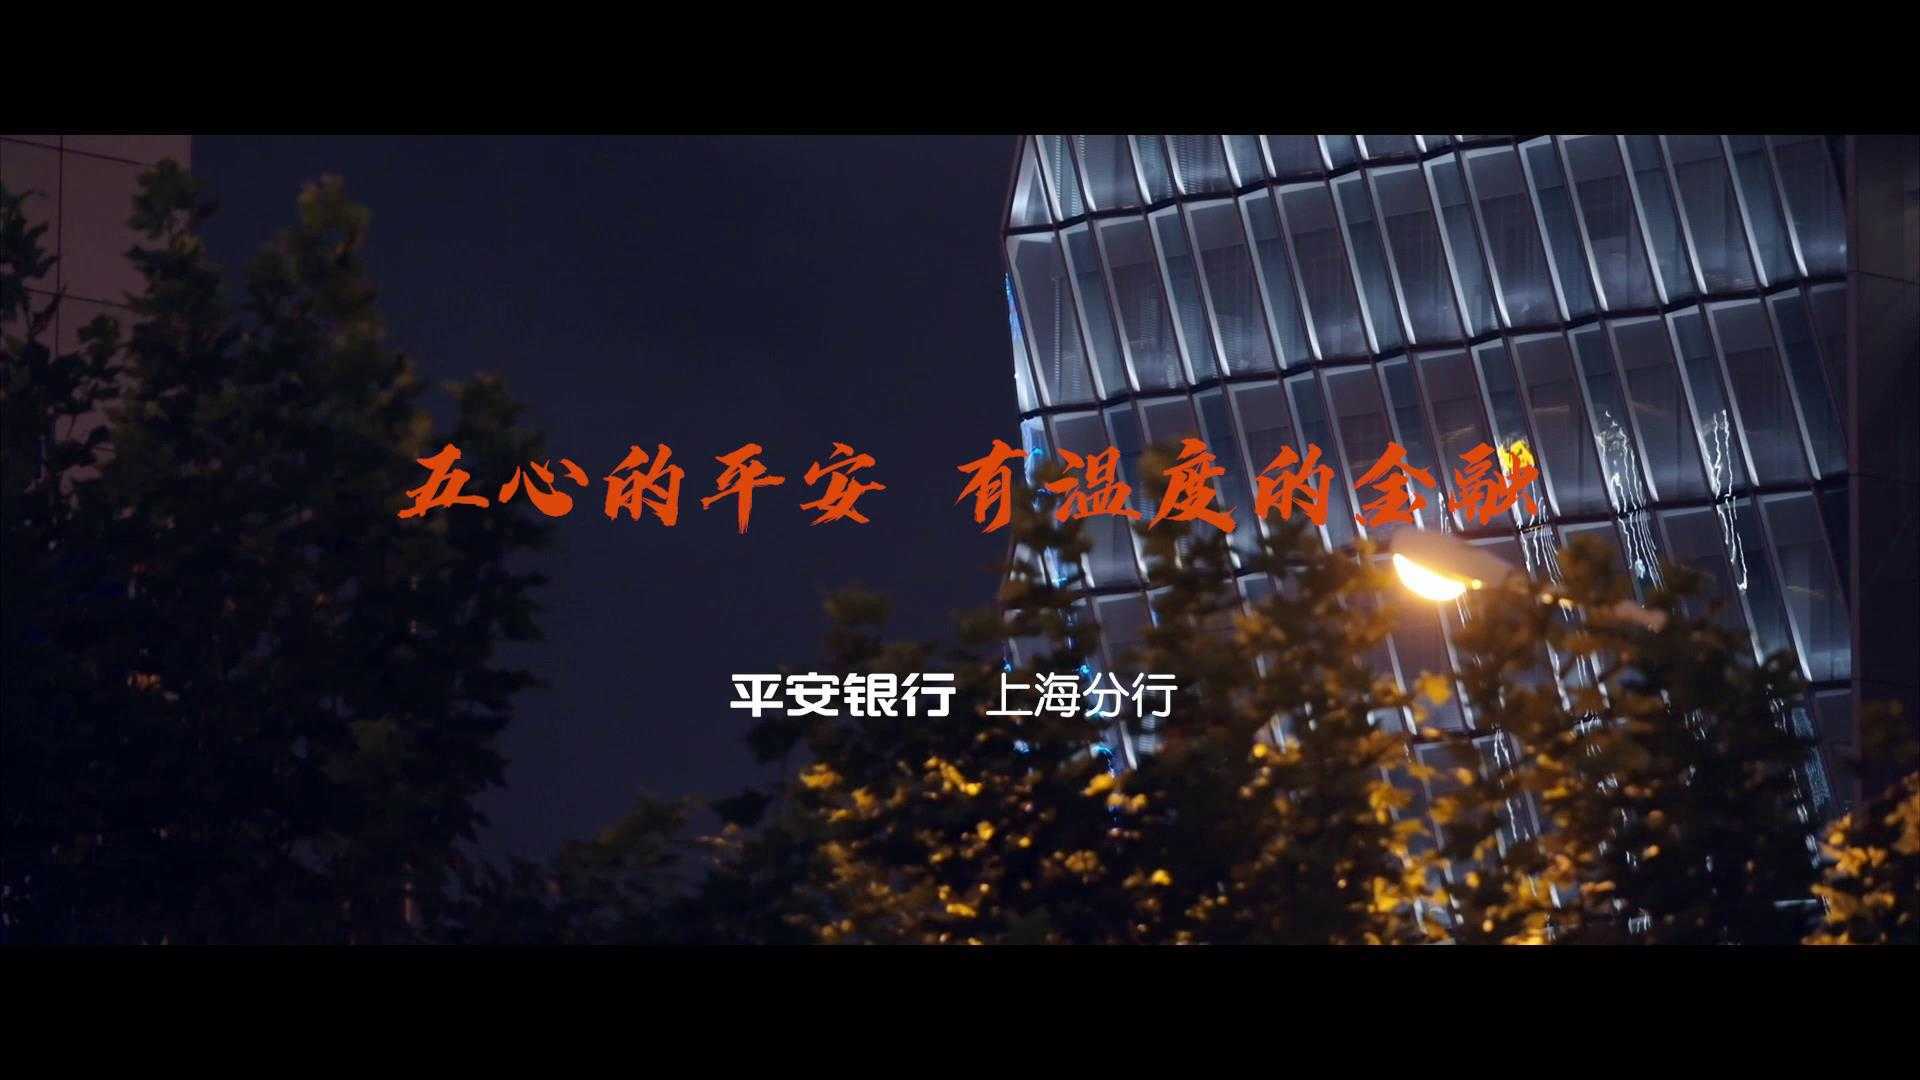 平安银行上海分行 五心故事短片（合集）